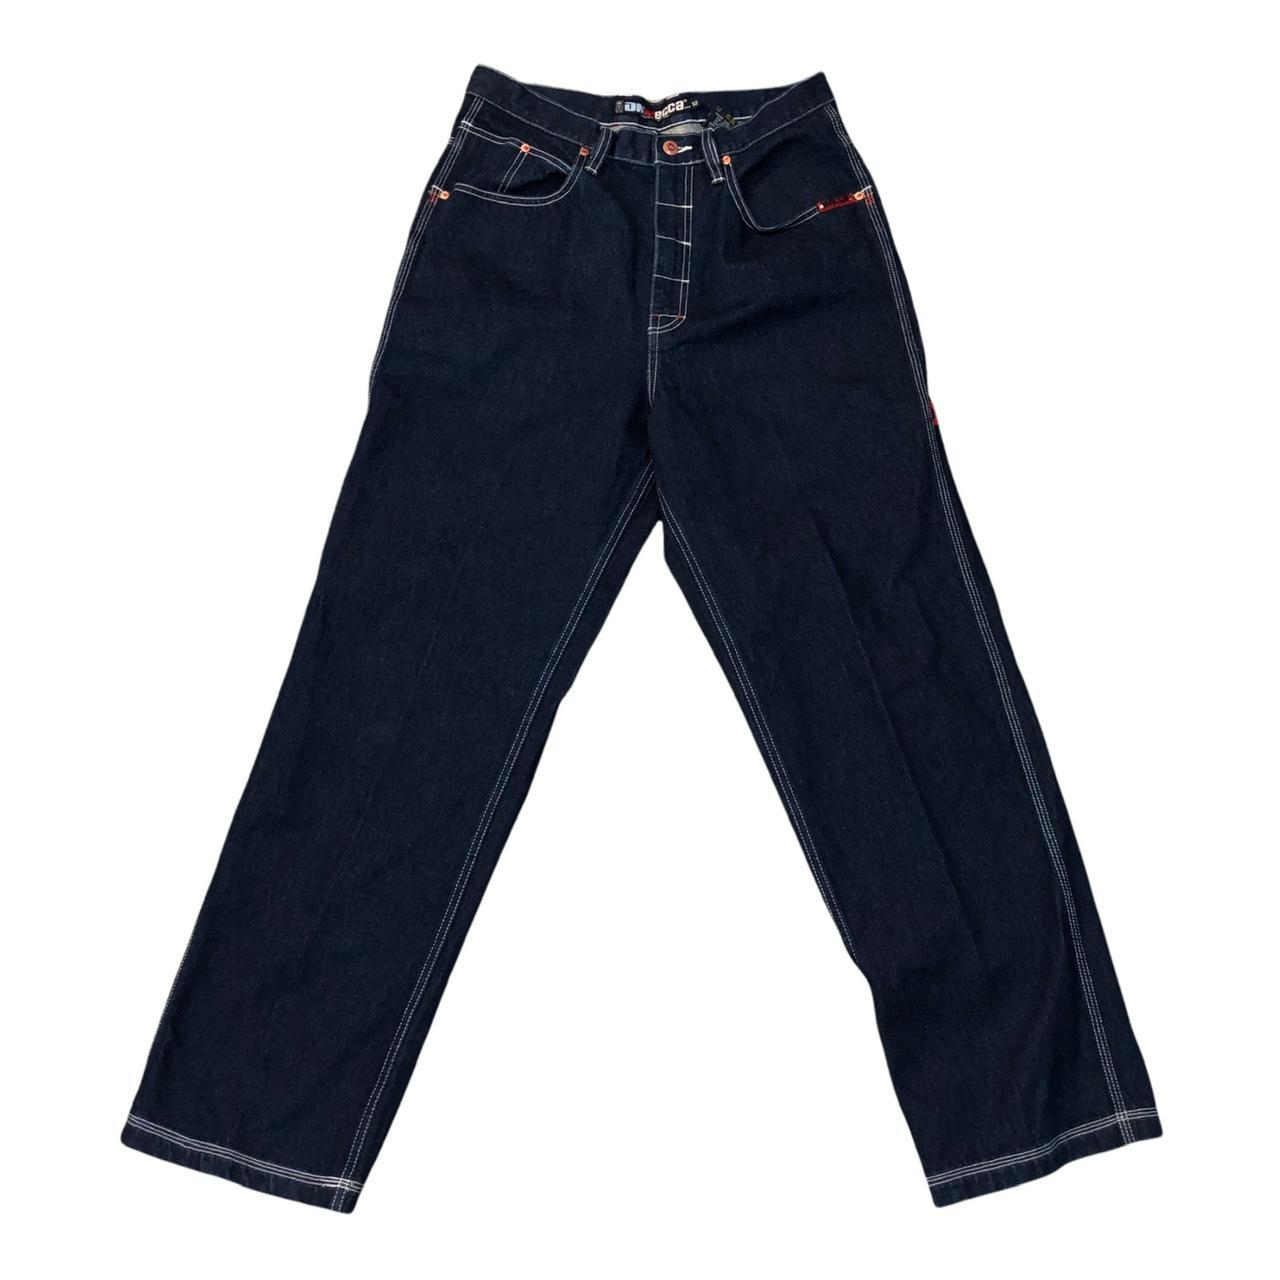 Vintage 90s Mecca DM USA Carpenter Denim Jeans... - Depop